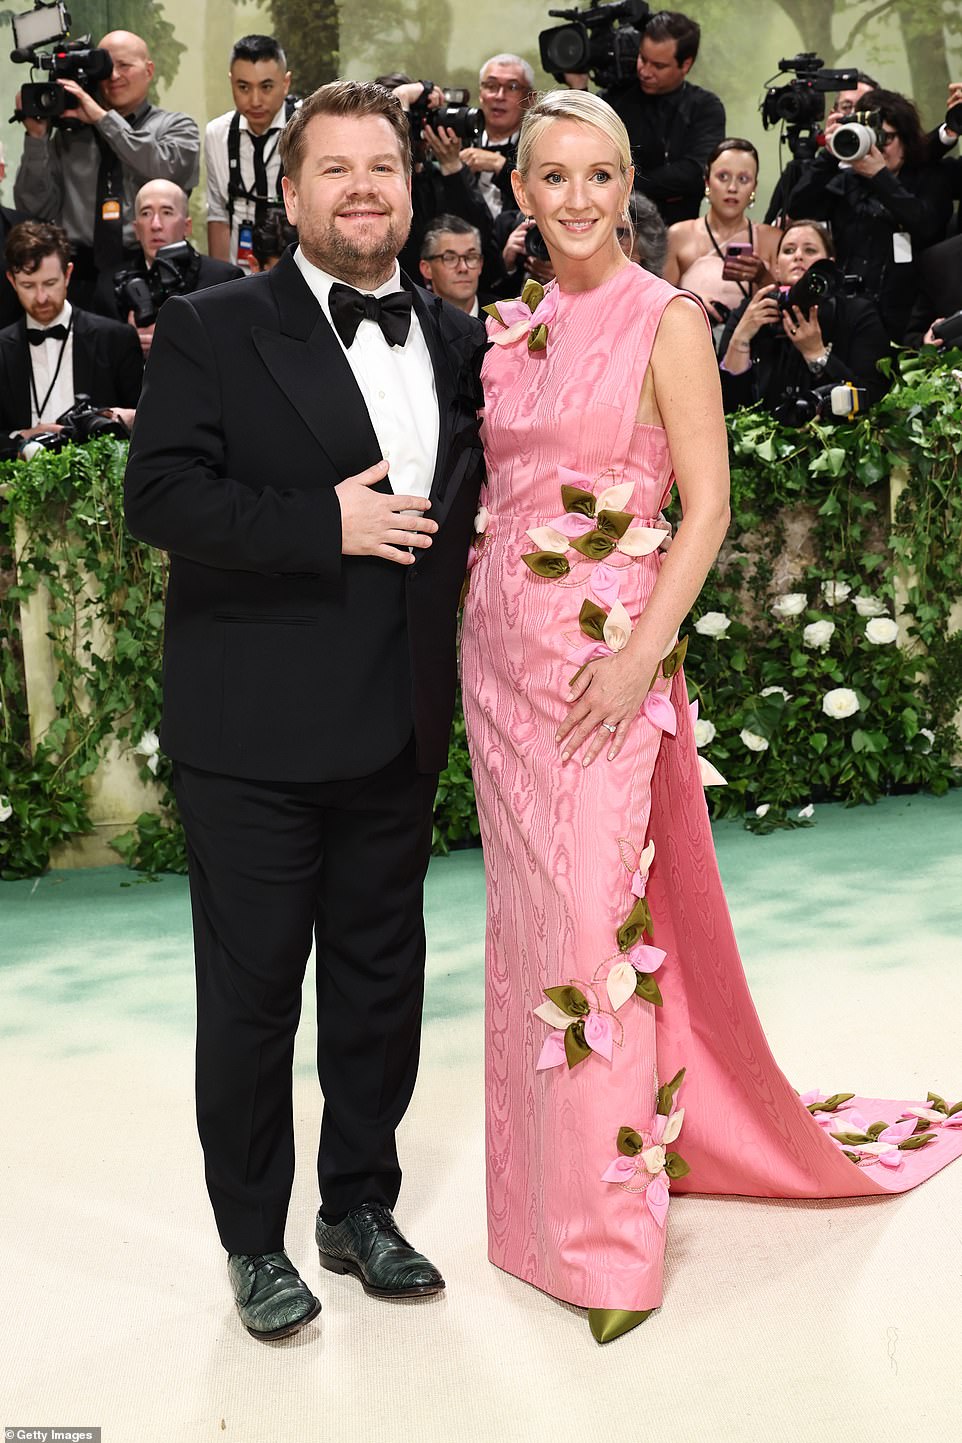 Джеймс Корден выглядел щеголевато в классическом черном смокинге, позируя рядом со своей женой Джулией Кэри, которая сияла в розовом платье без рукавов с цветочным декором.